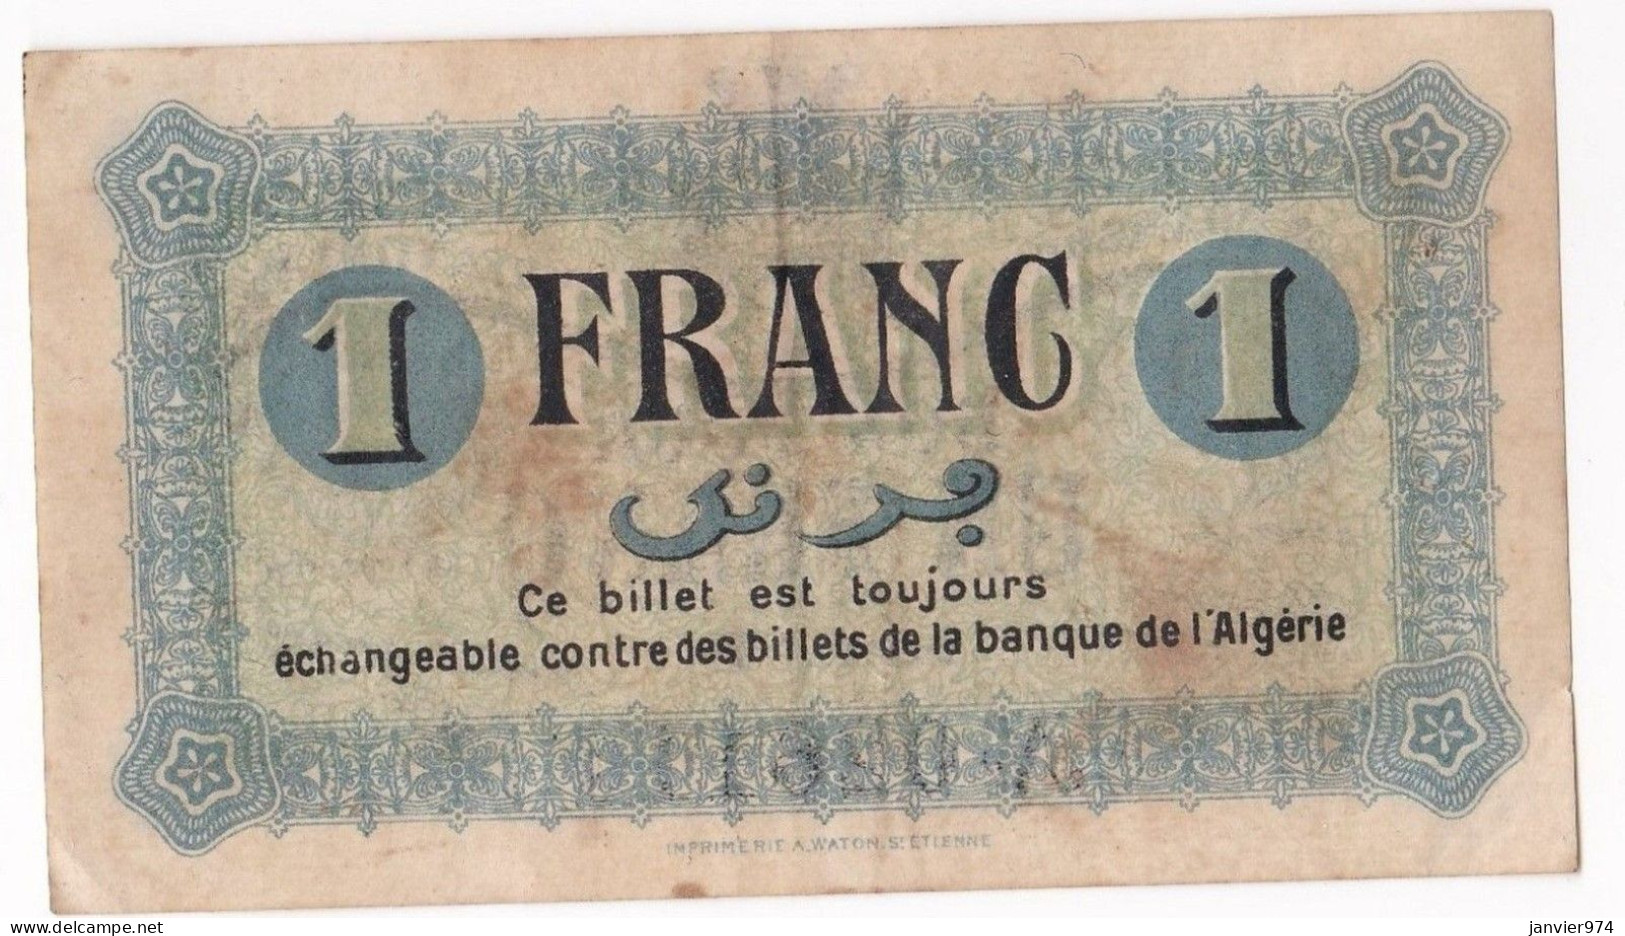 Algerie Constantine .Chambre De Commerce. 1 Franc 1 Mai 1945 Serie B N° 026110, Billet Colonial Circulé - Algerien